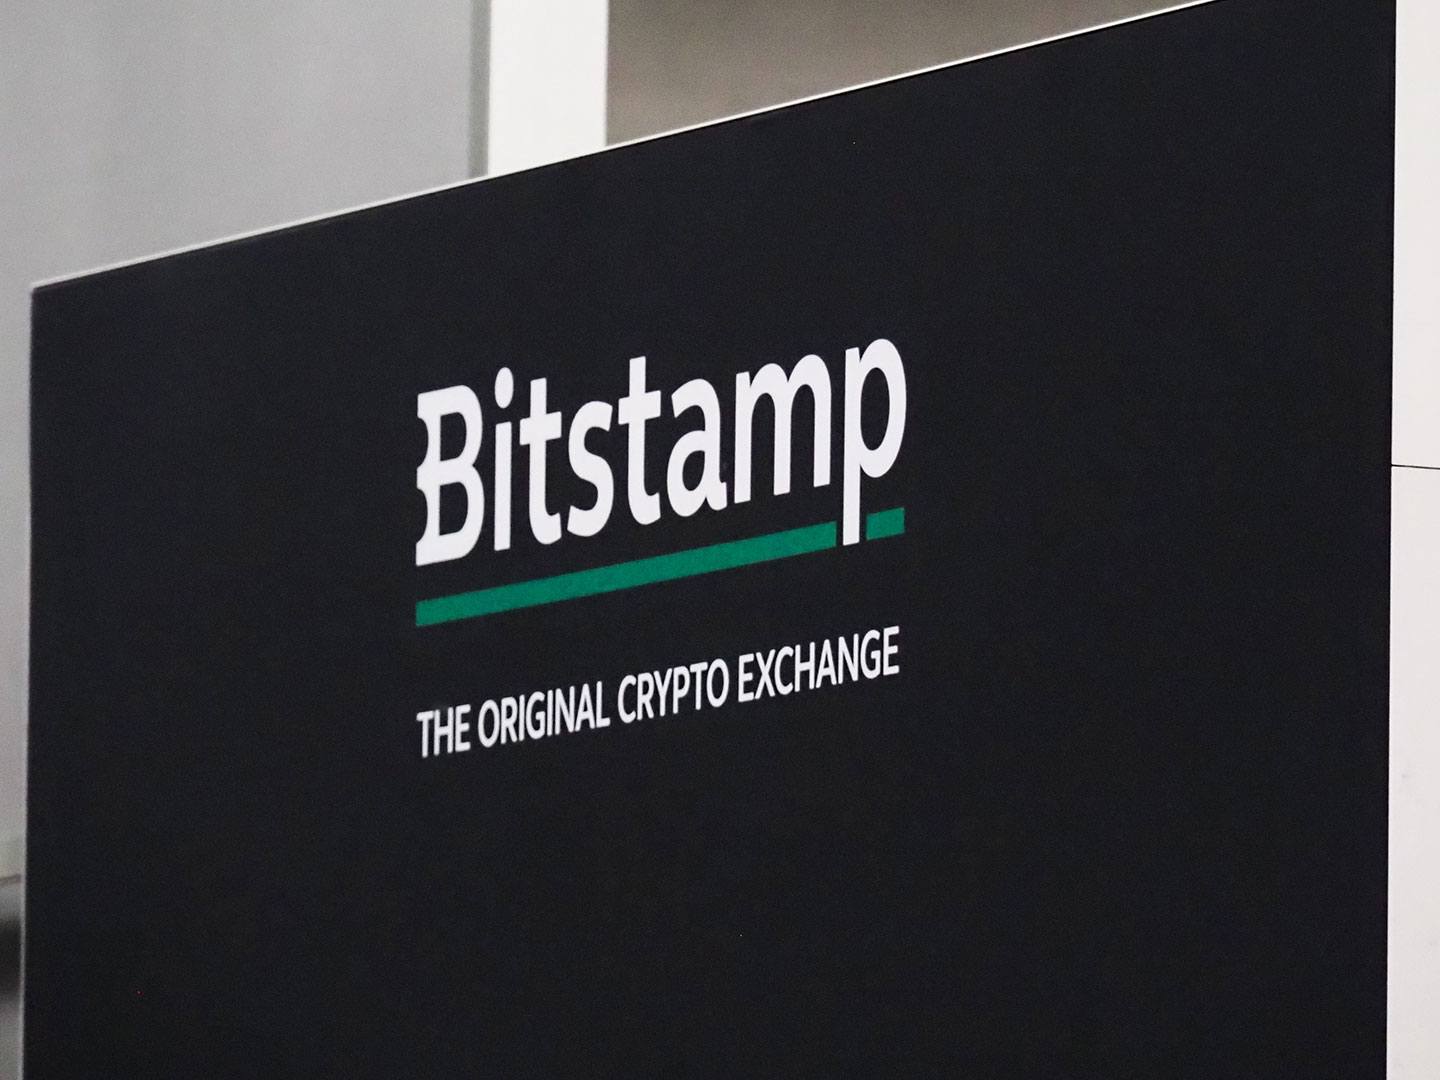 بيتستامب Bitstamp تنضم إلى قائمة هيئة السلوك المالي (FCA) لشركات التشفير المسجلة